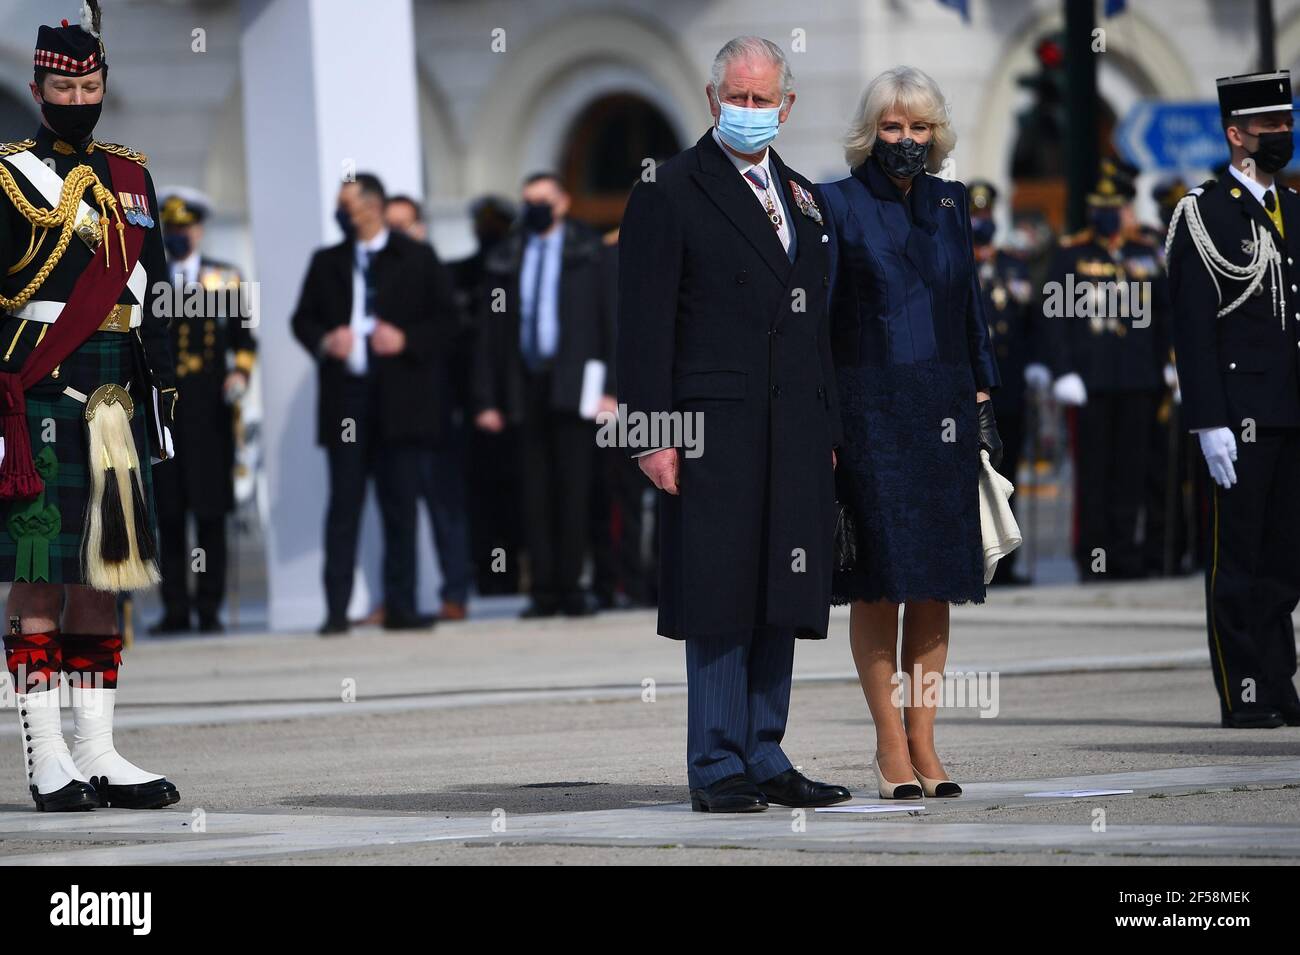 Il Principe di Galles e la Duchessa di Cornovaglia durante una cerimonia di deposizione della corona al Memoriale del Milite Ignoto in Piazza Syntagma, Atene, durante una visita di due giorni in Grecia per celebrare il bicentenario dell'indipendenza greca. Data immagine: Giovedì 25 marzo 2021. Foto Stock